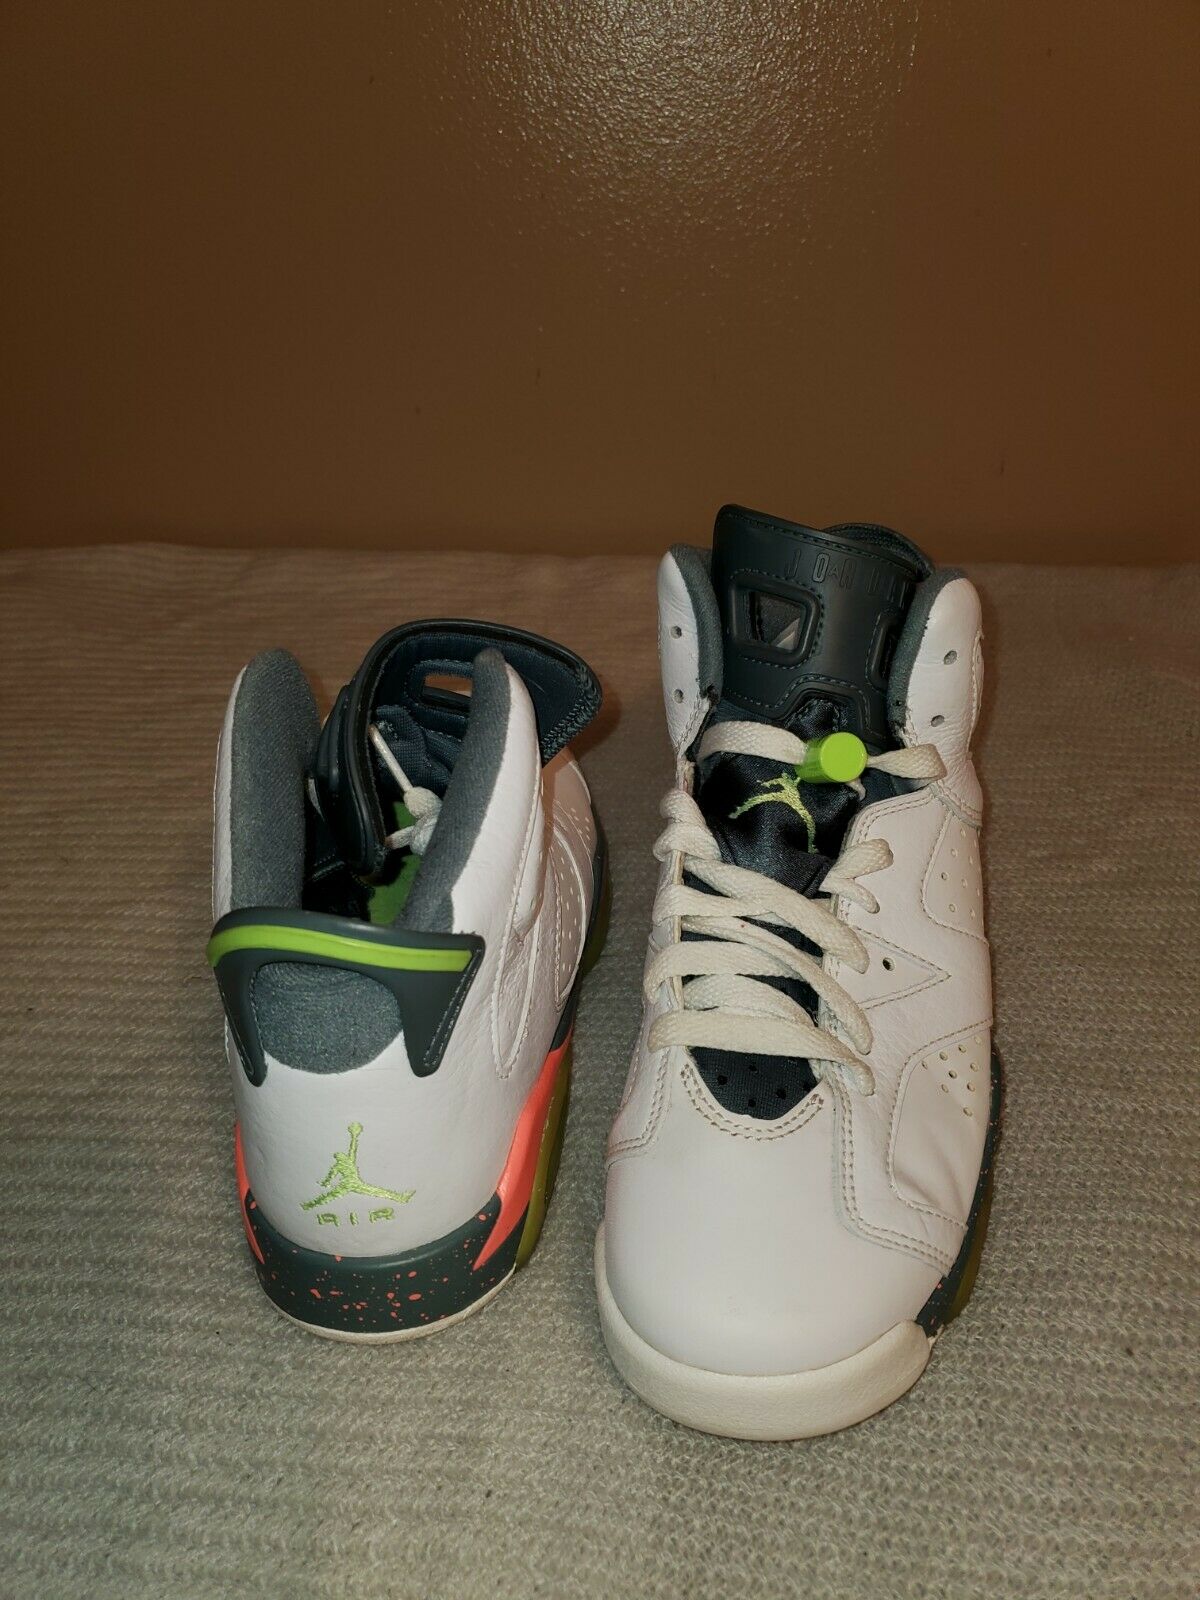 Nike Air Jordan 6 Retro Bright Mango Basketball Shoes 384665 114 Kids 5.5Y/7W